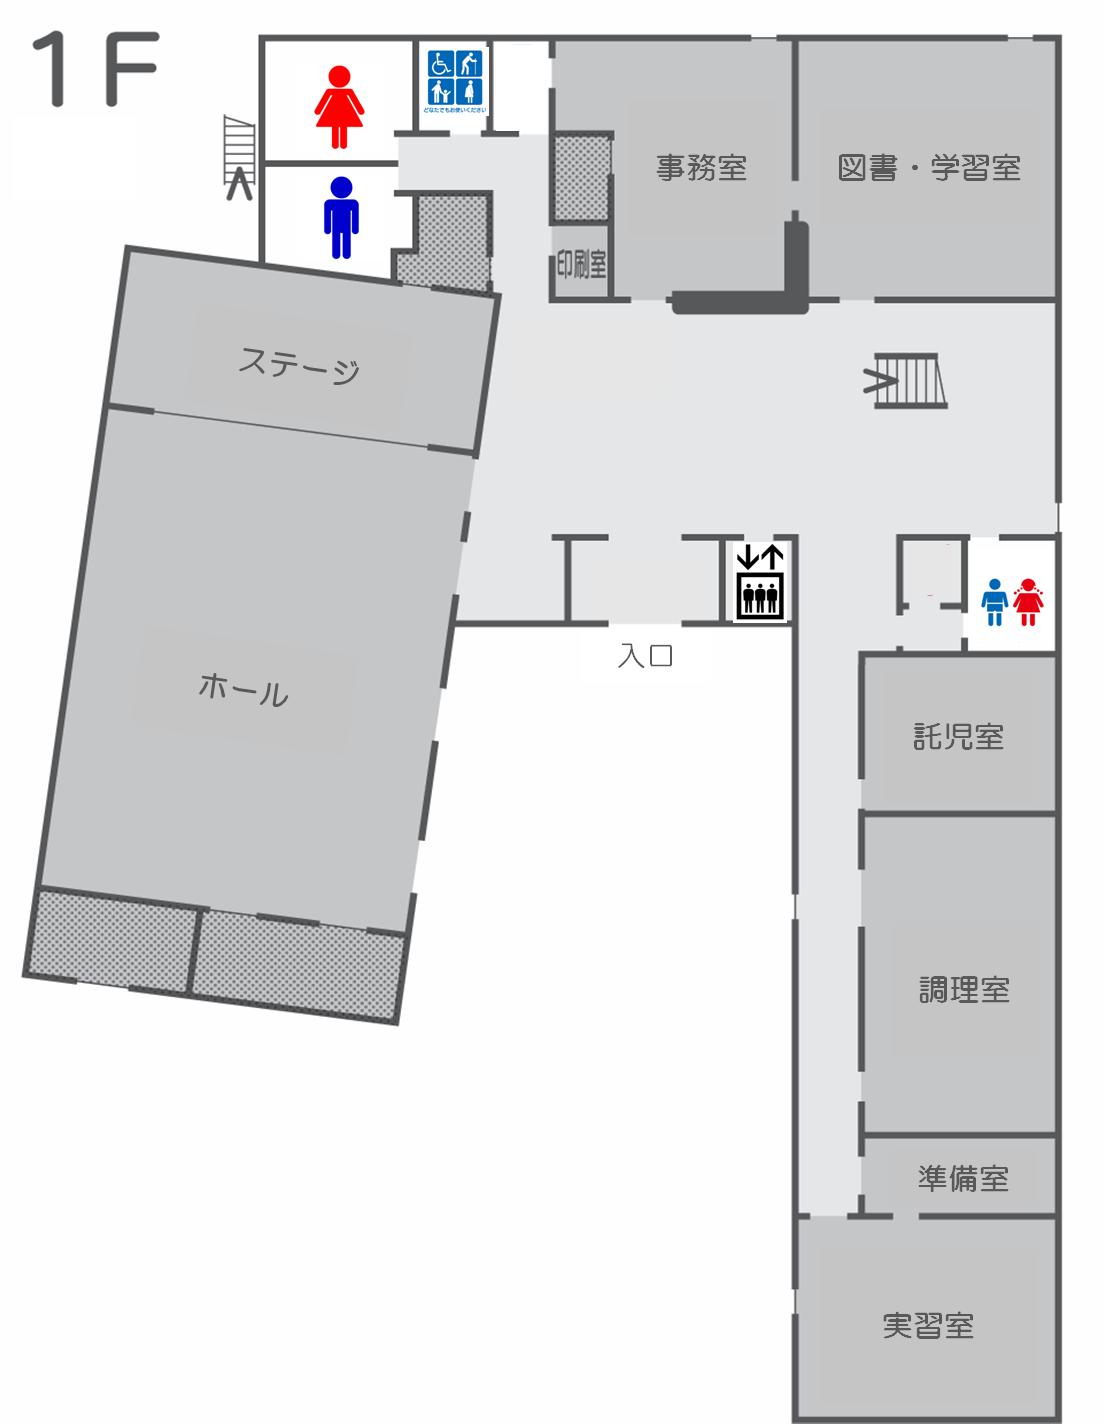 新里文化センター間取り図1階